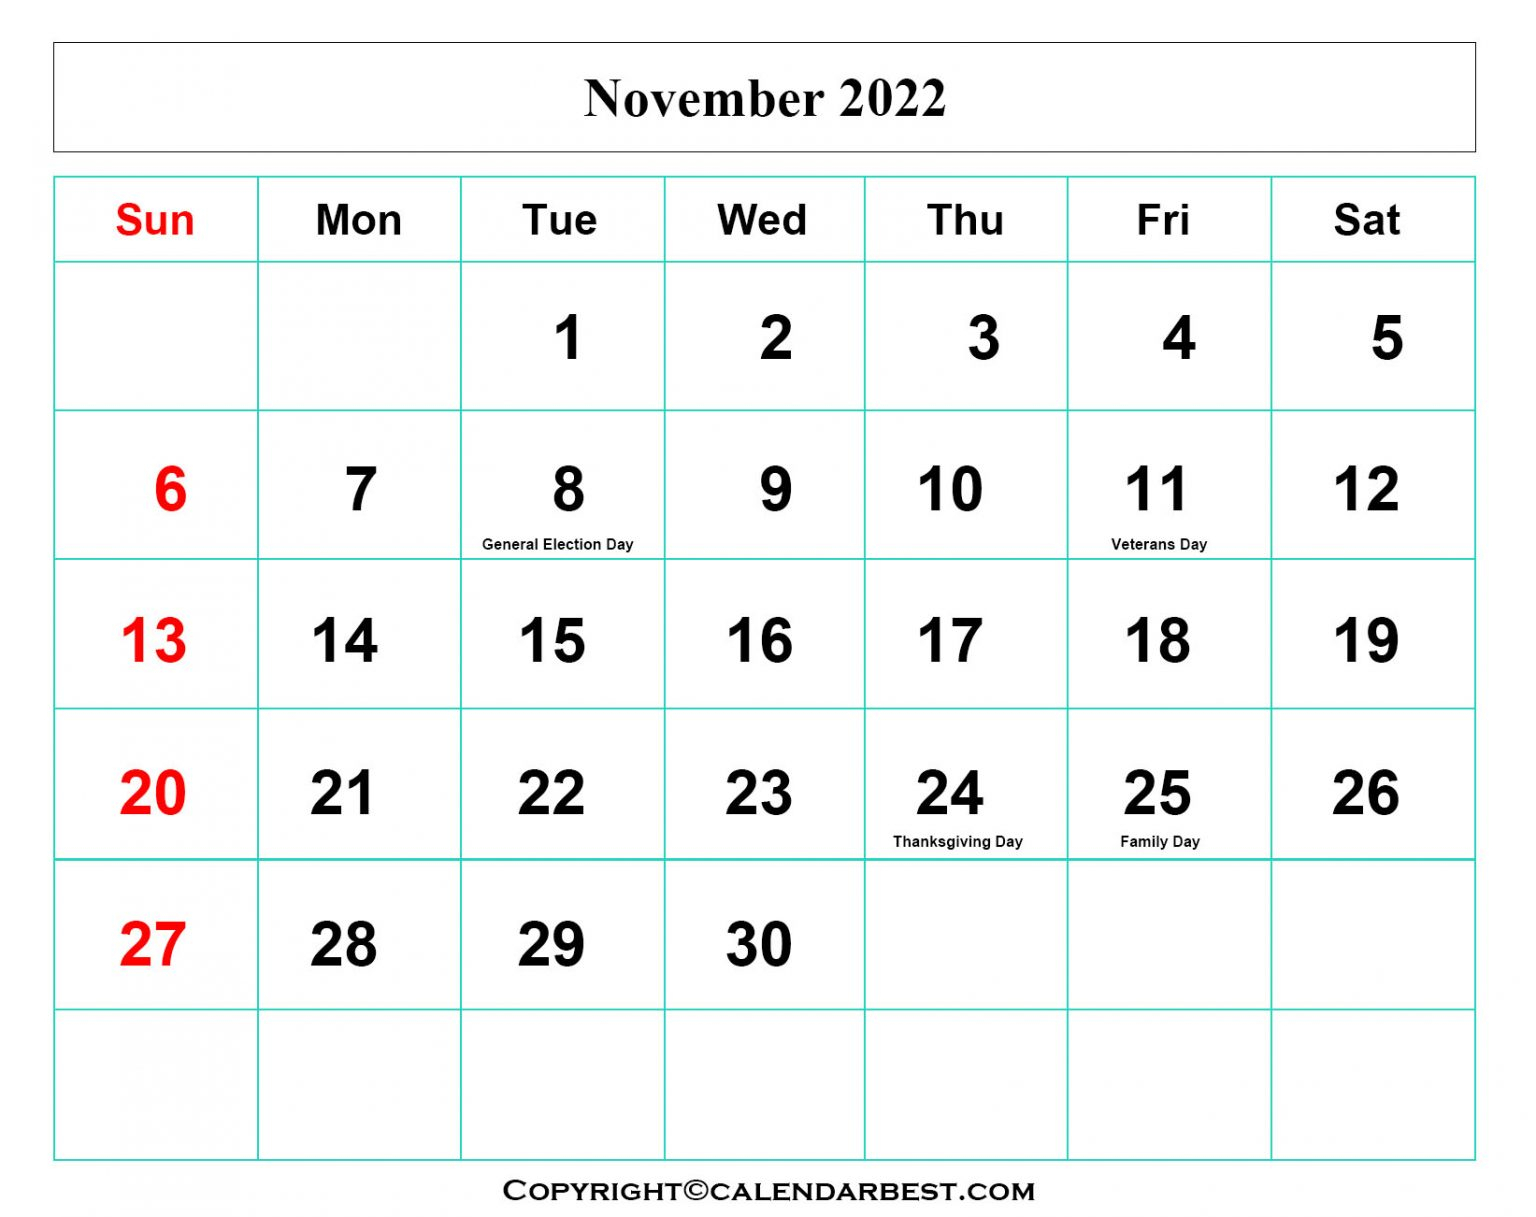 Get November 2022 Calendar Pdf